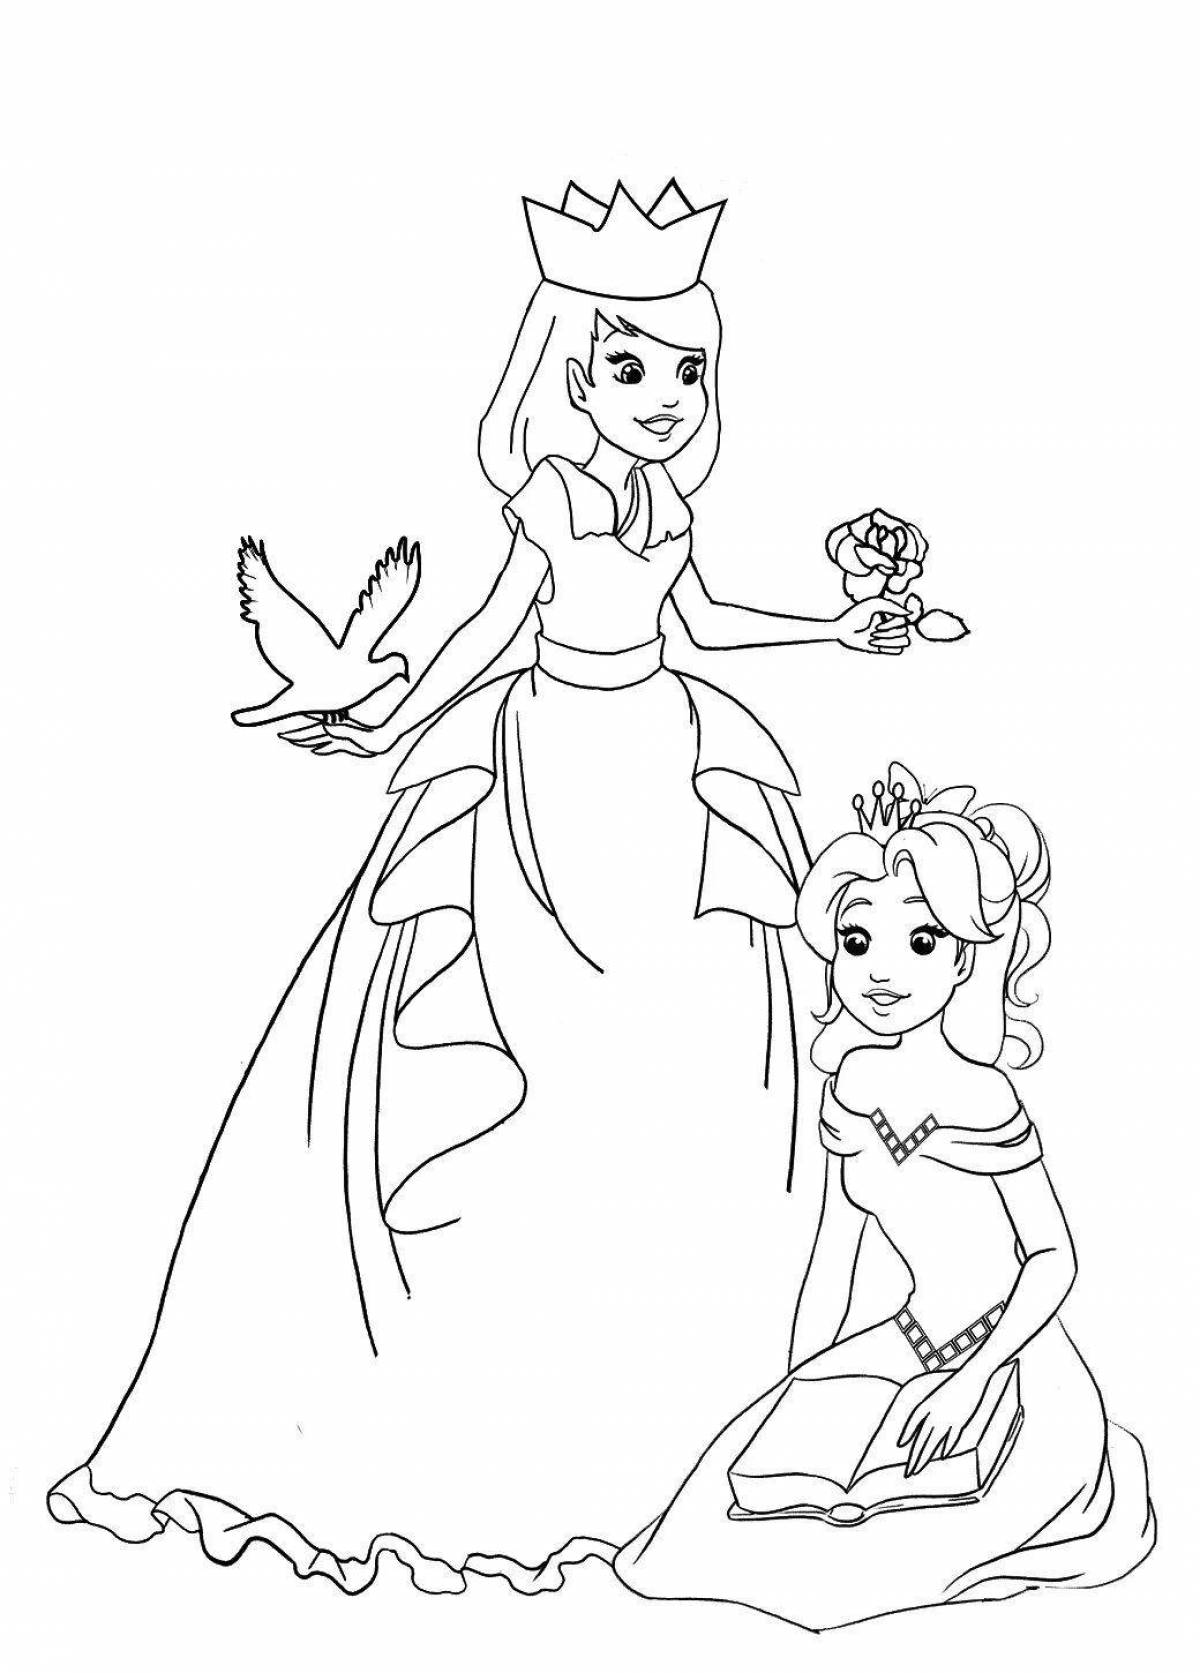 Принцесса и Король раскраска